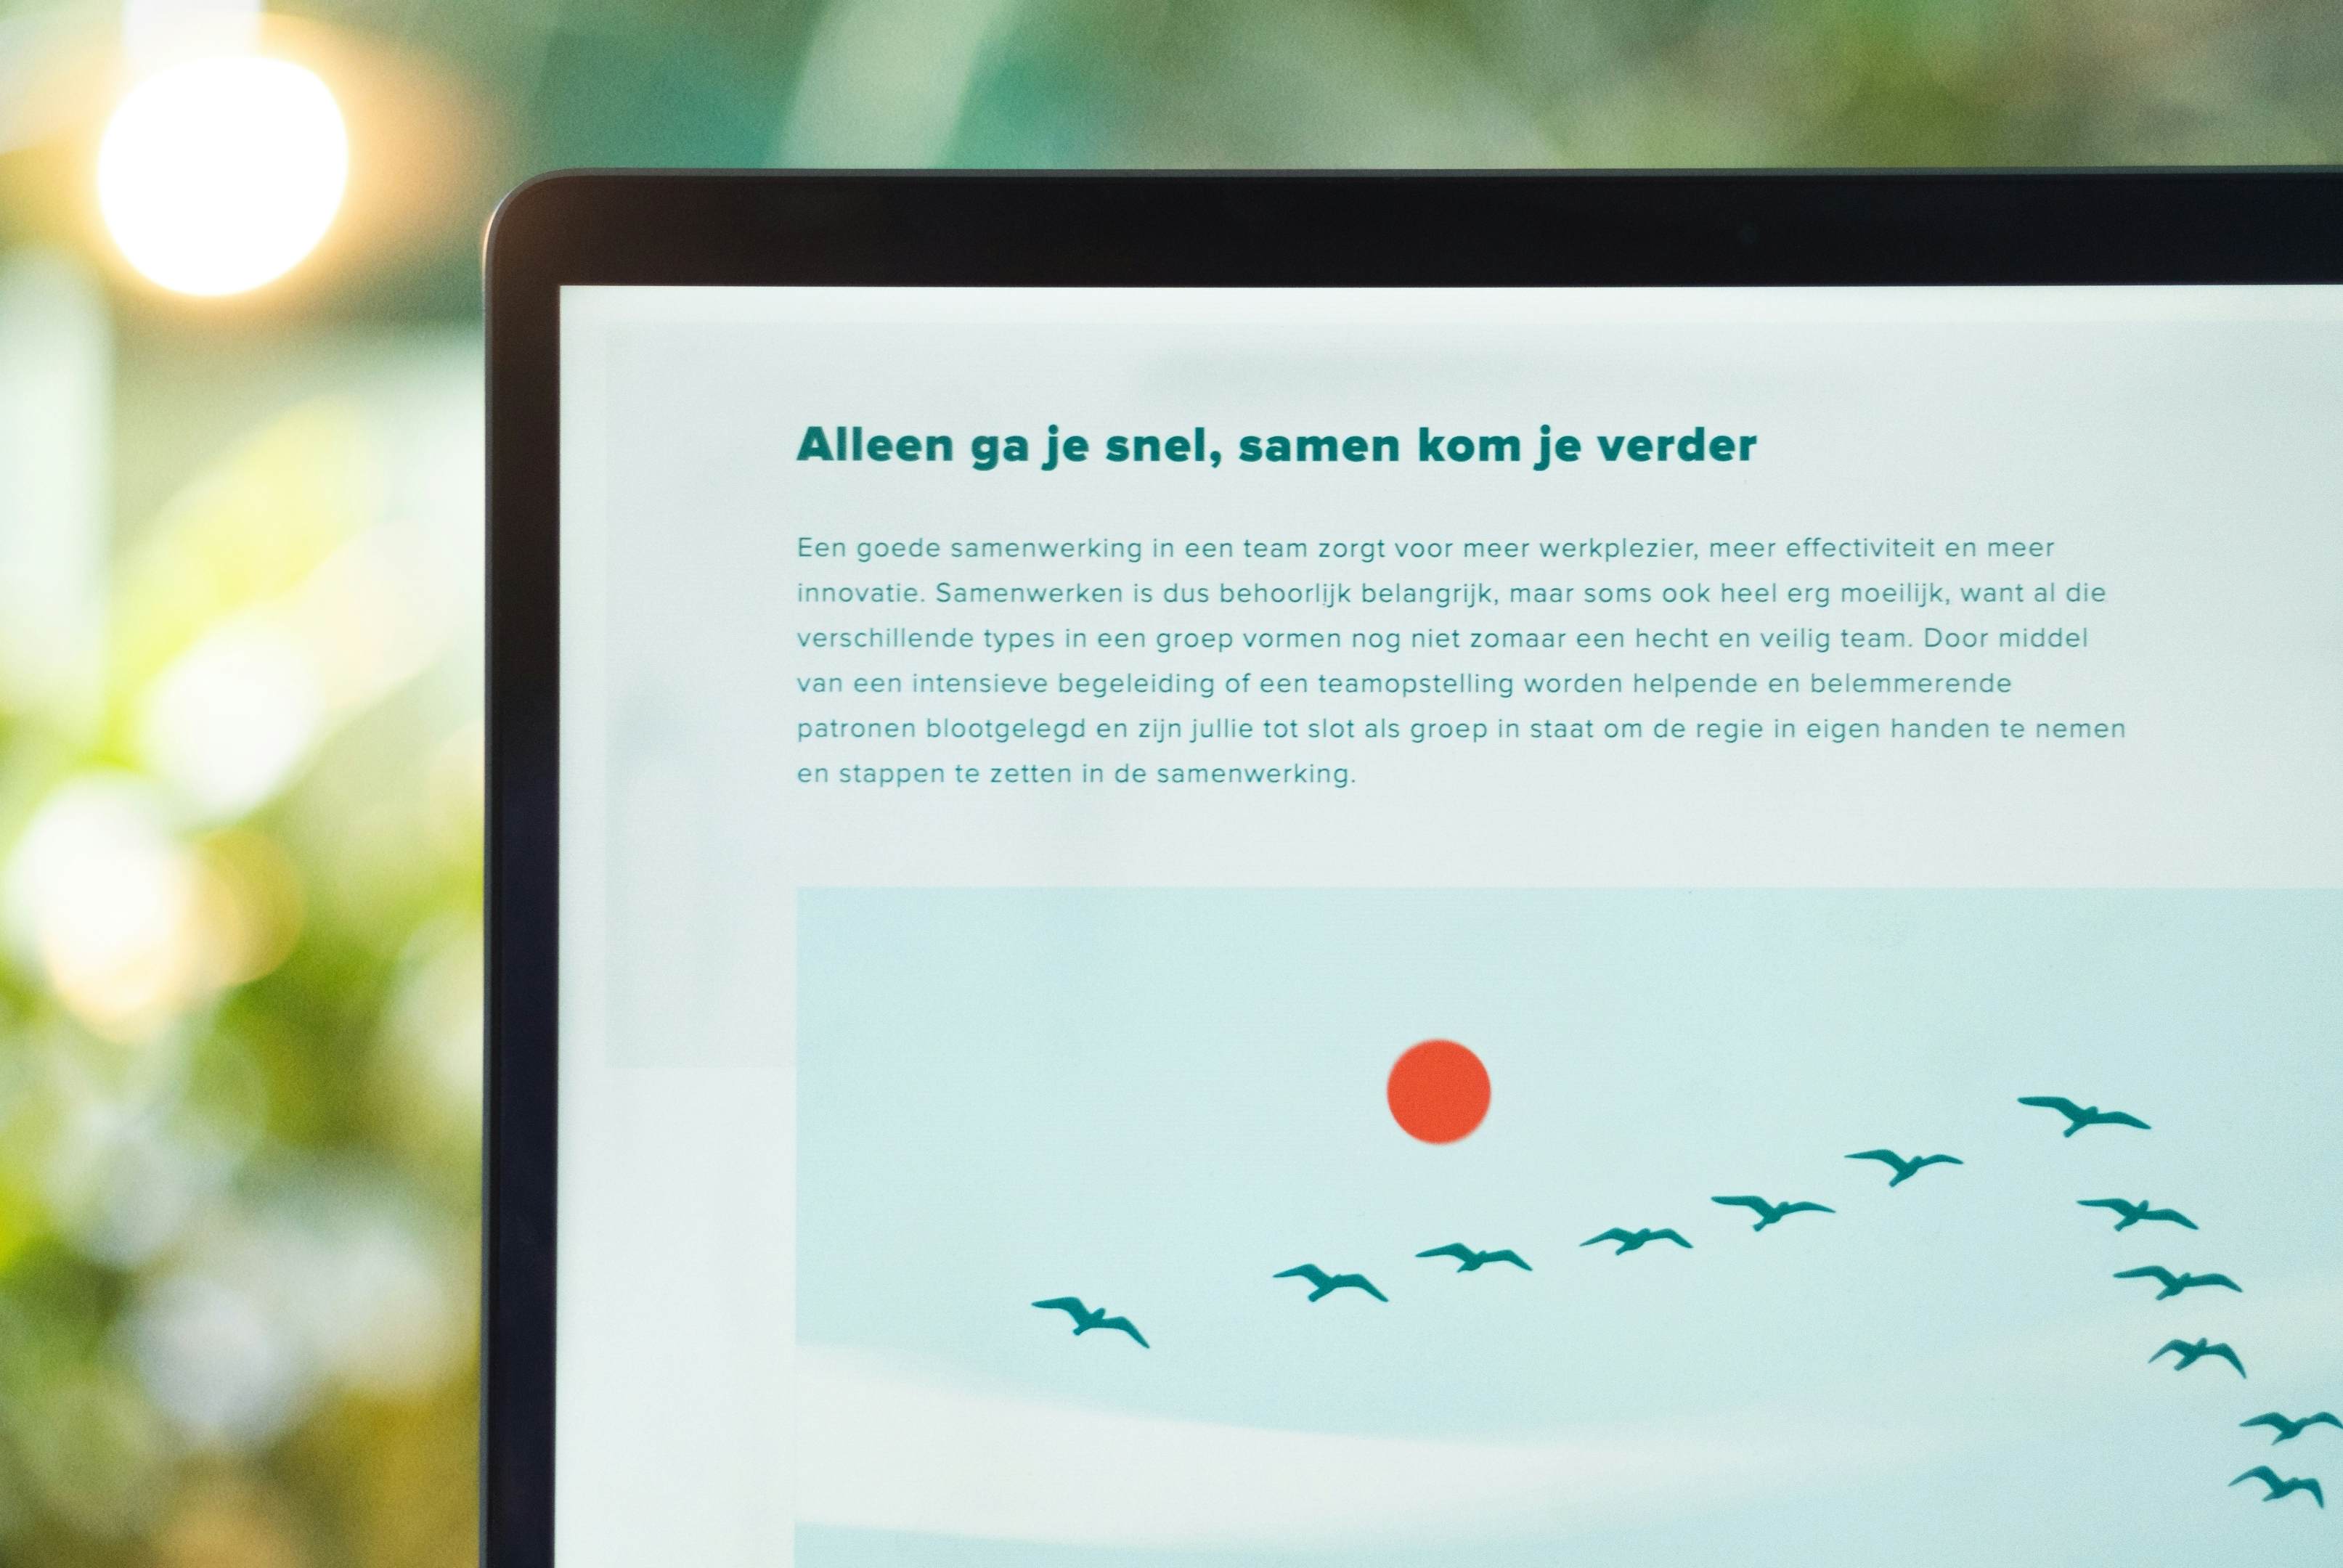 Laptop with a page from De Beukelaar Groep website.